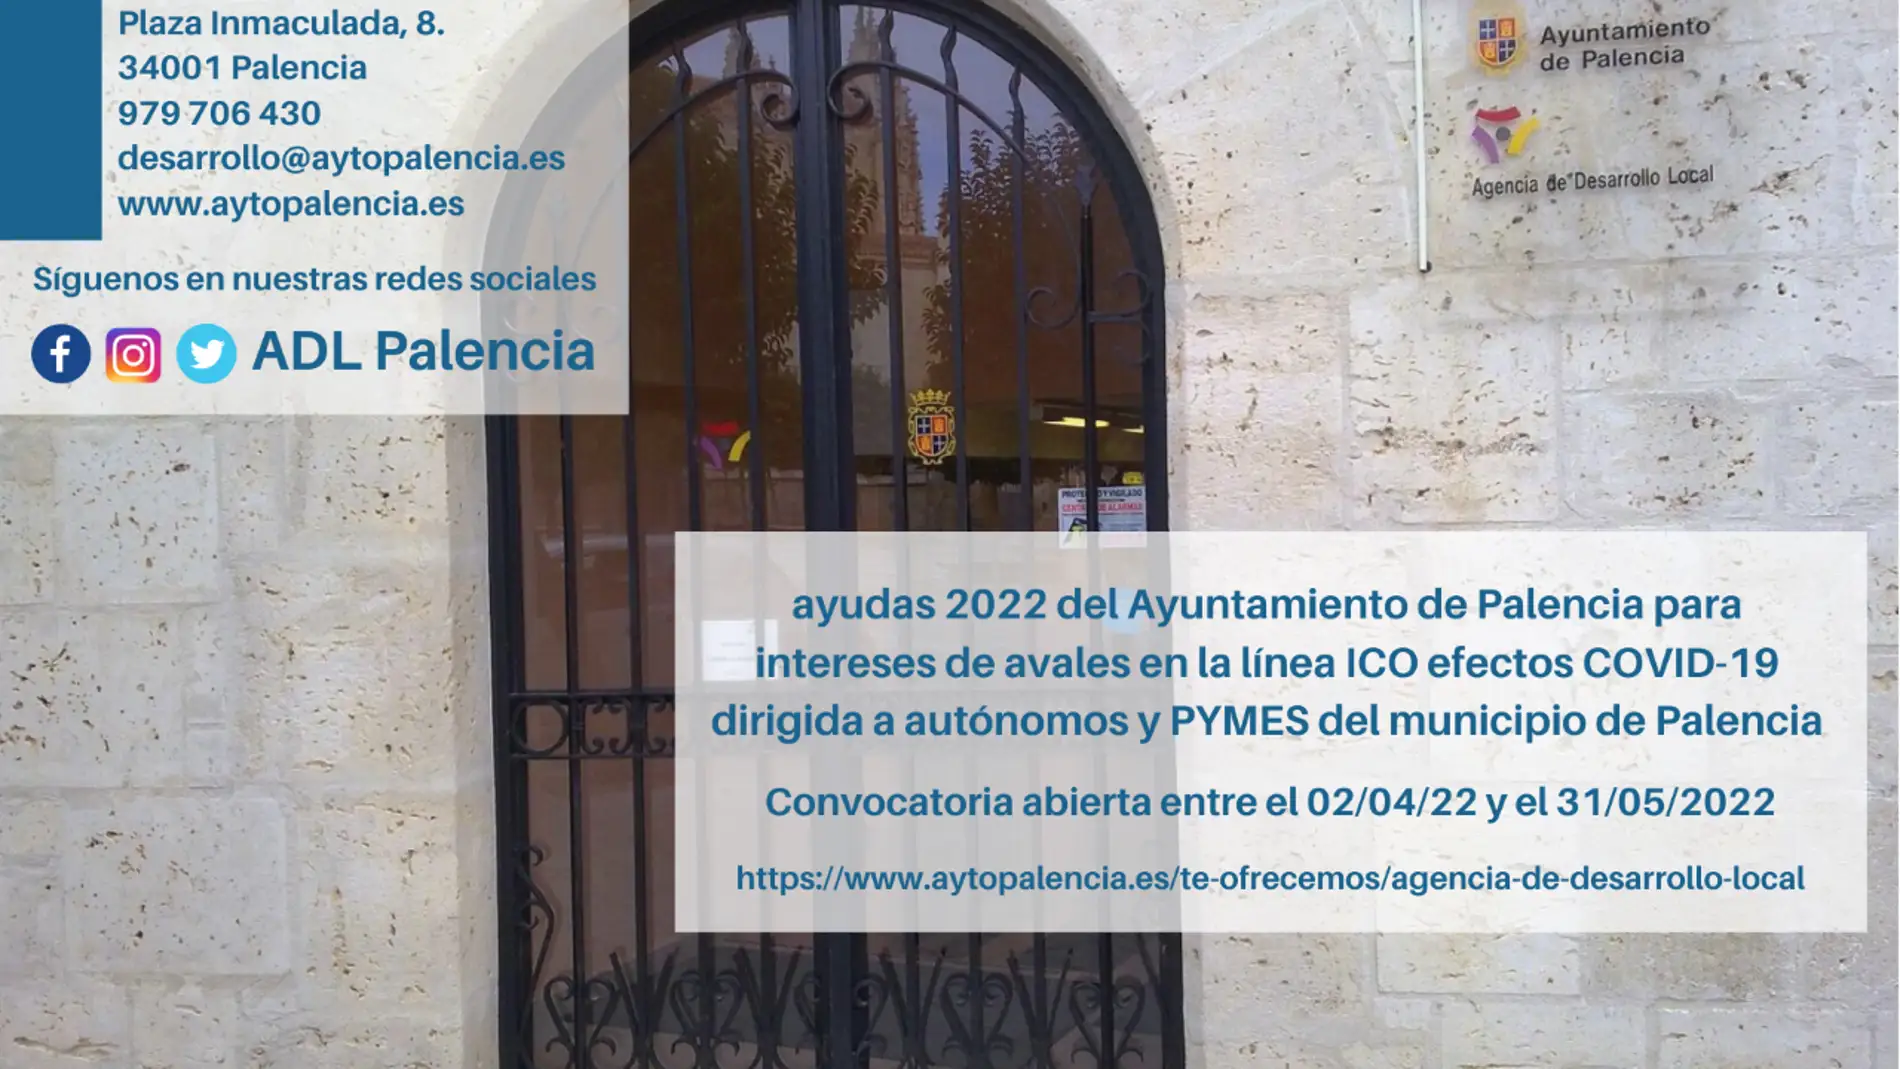 El Ayuntamiento de Palencia abre el plazo para la presentación de solicitudes de las ayudas para el abono de los intereses relativos a los préstamos ICO COVID-19